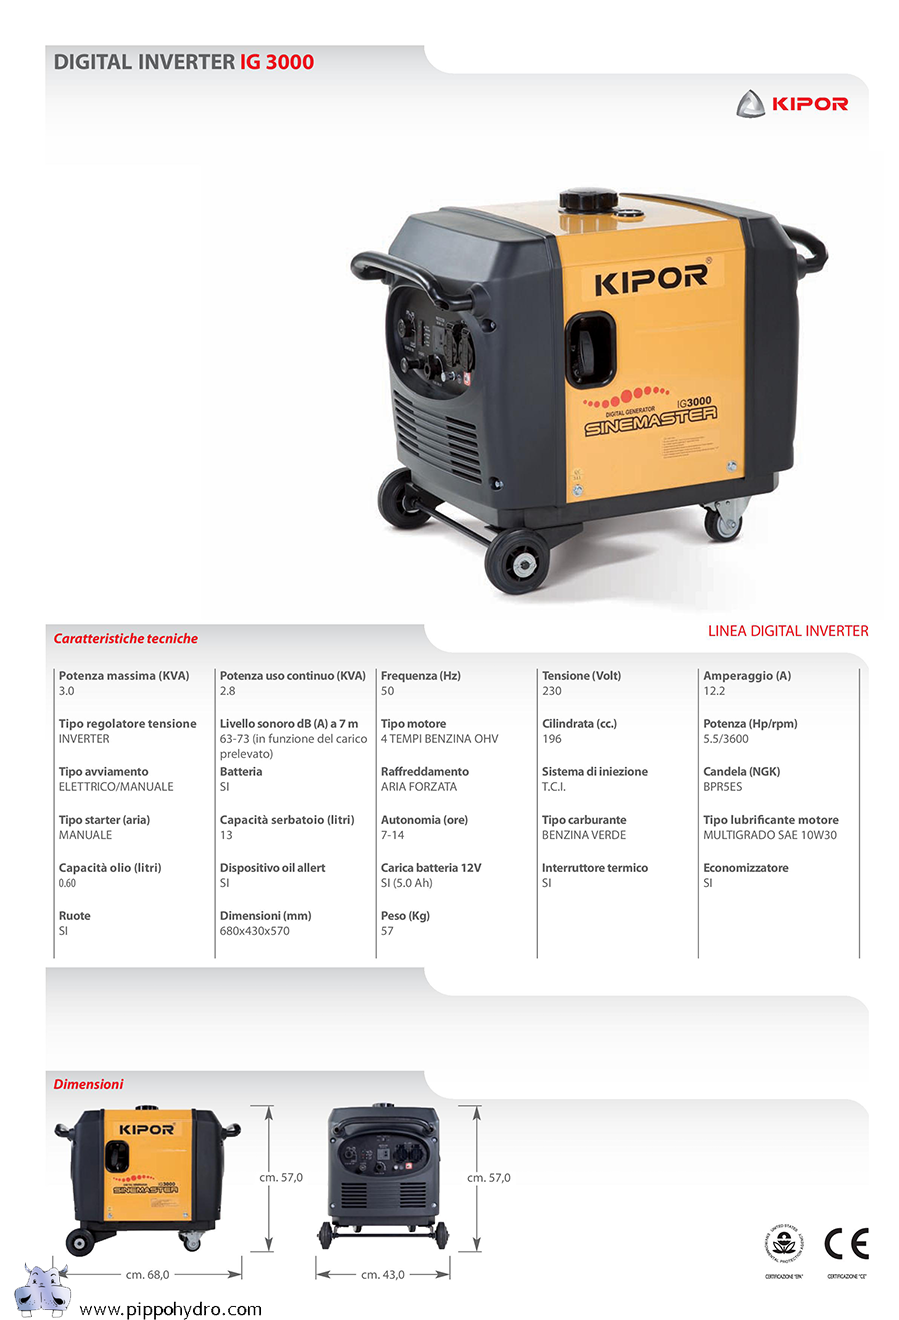 Generatore di corrente Gruppo Elettrogeno inverter a benzina, Kipor IG 3000  2,52KW 2520W TRASPORTABILE Kipor - Generatori di corrente